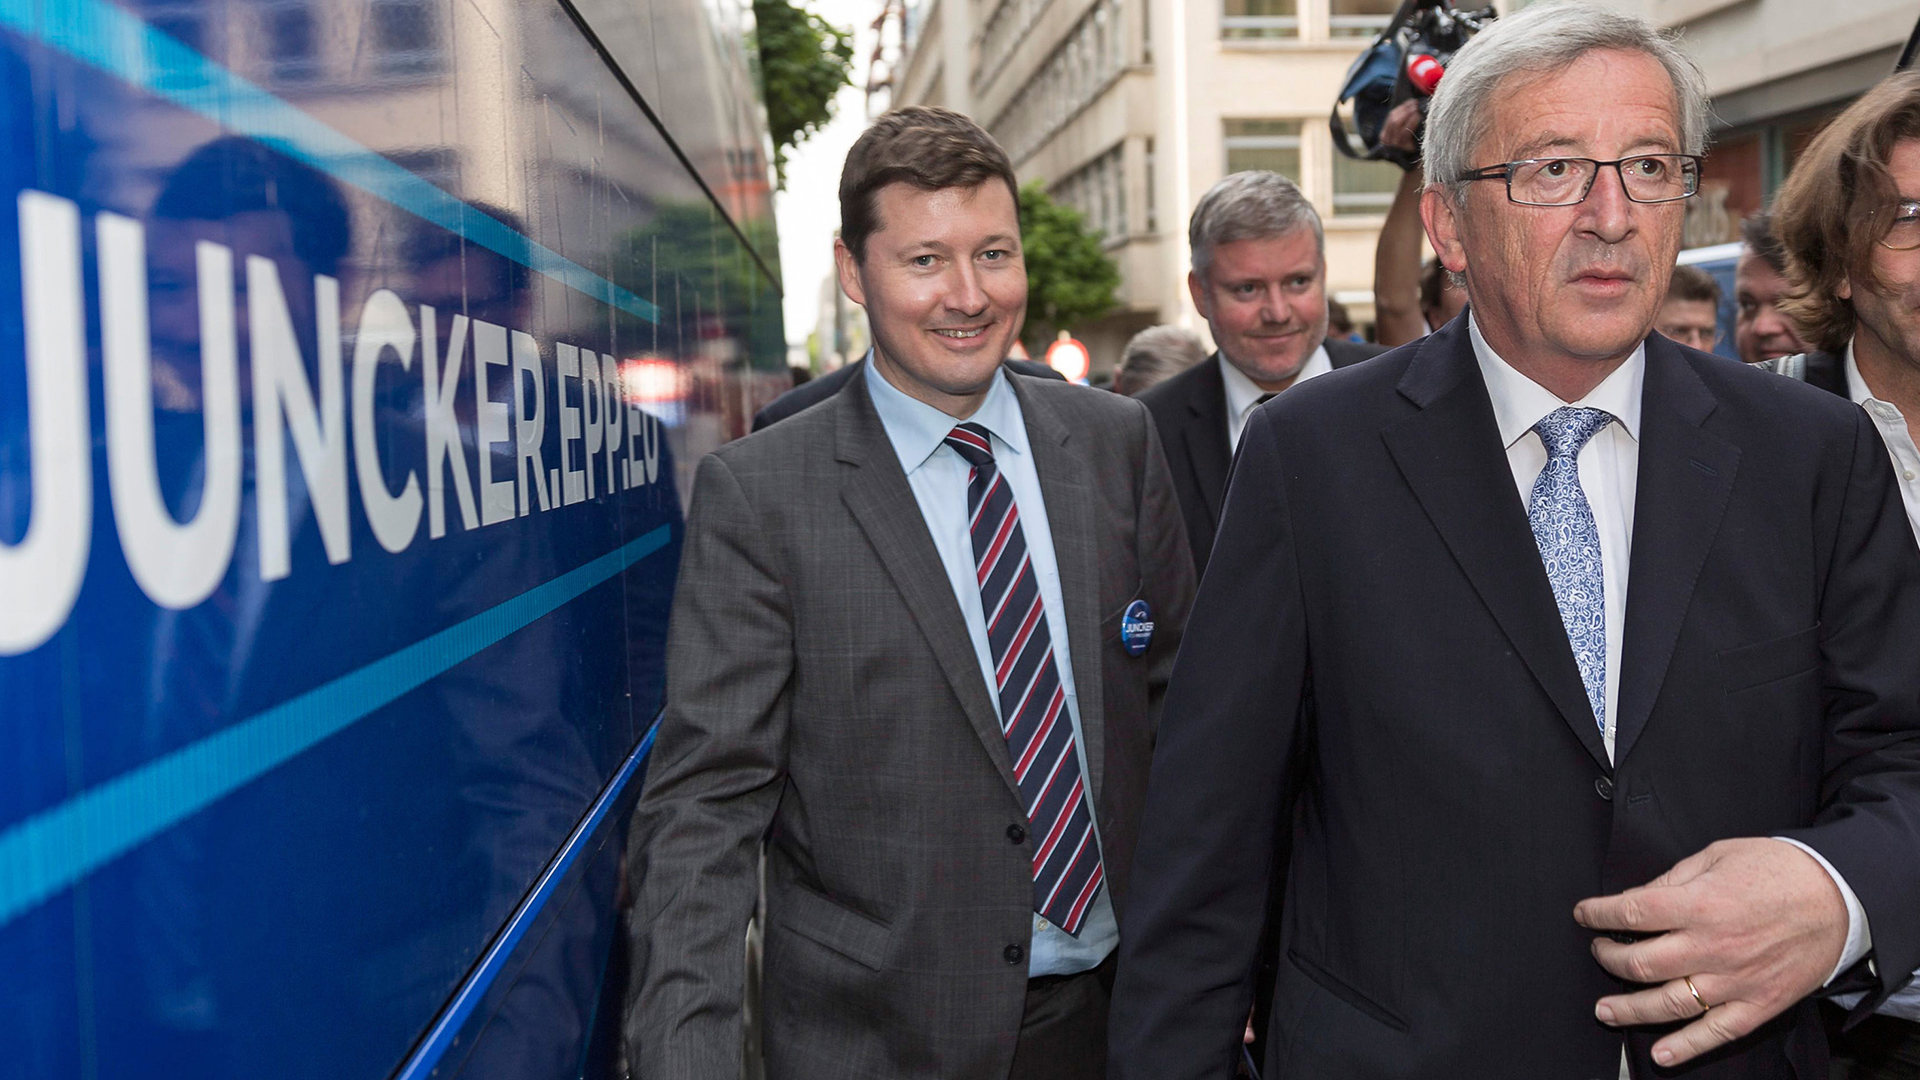 Selmayr und Juncker vor Tourbus